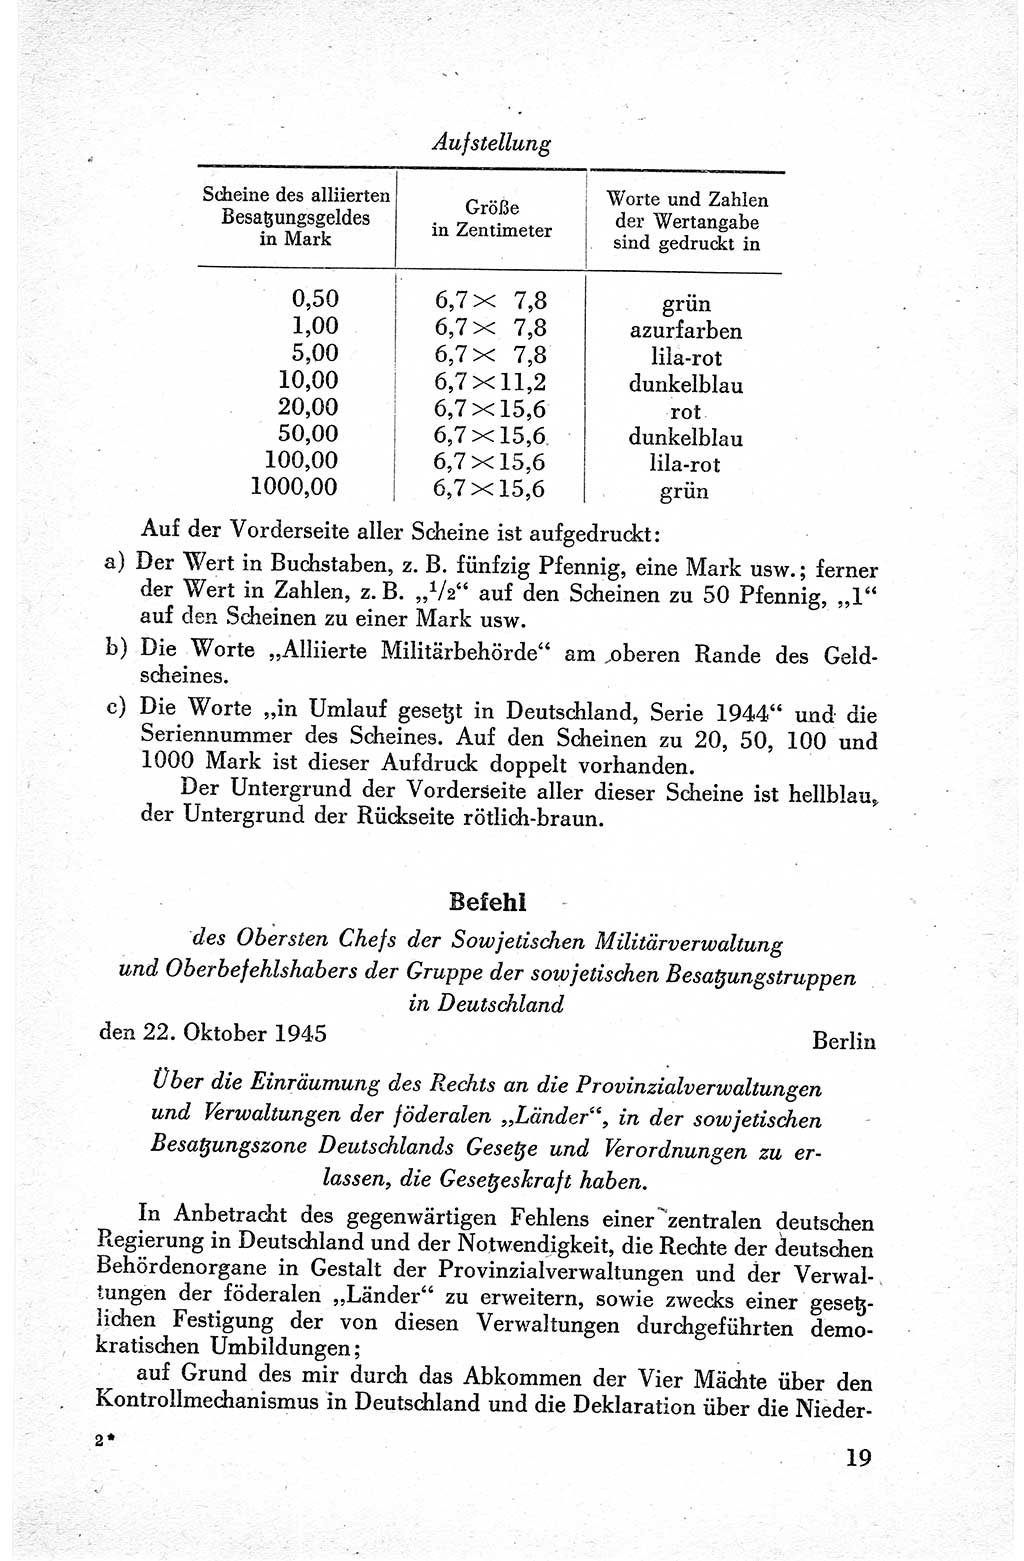 Befehle des Obersten Chefs der Sowjetischen Miltärverwaltung (SMV) in Deutschland - Aus dem Stab der Sowjetischen Militärverwaltung in Deutschland 1945, Seite 19 (Bef. SMV Dtl. 1945, S. 19)